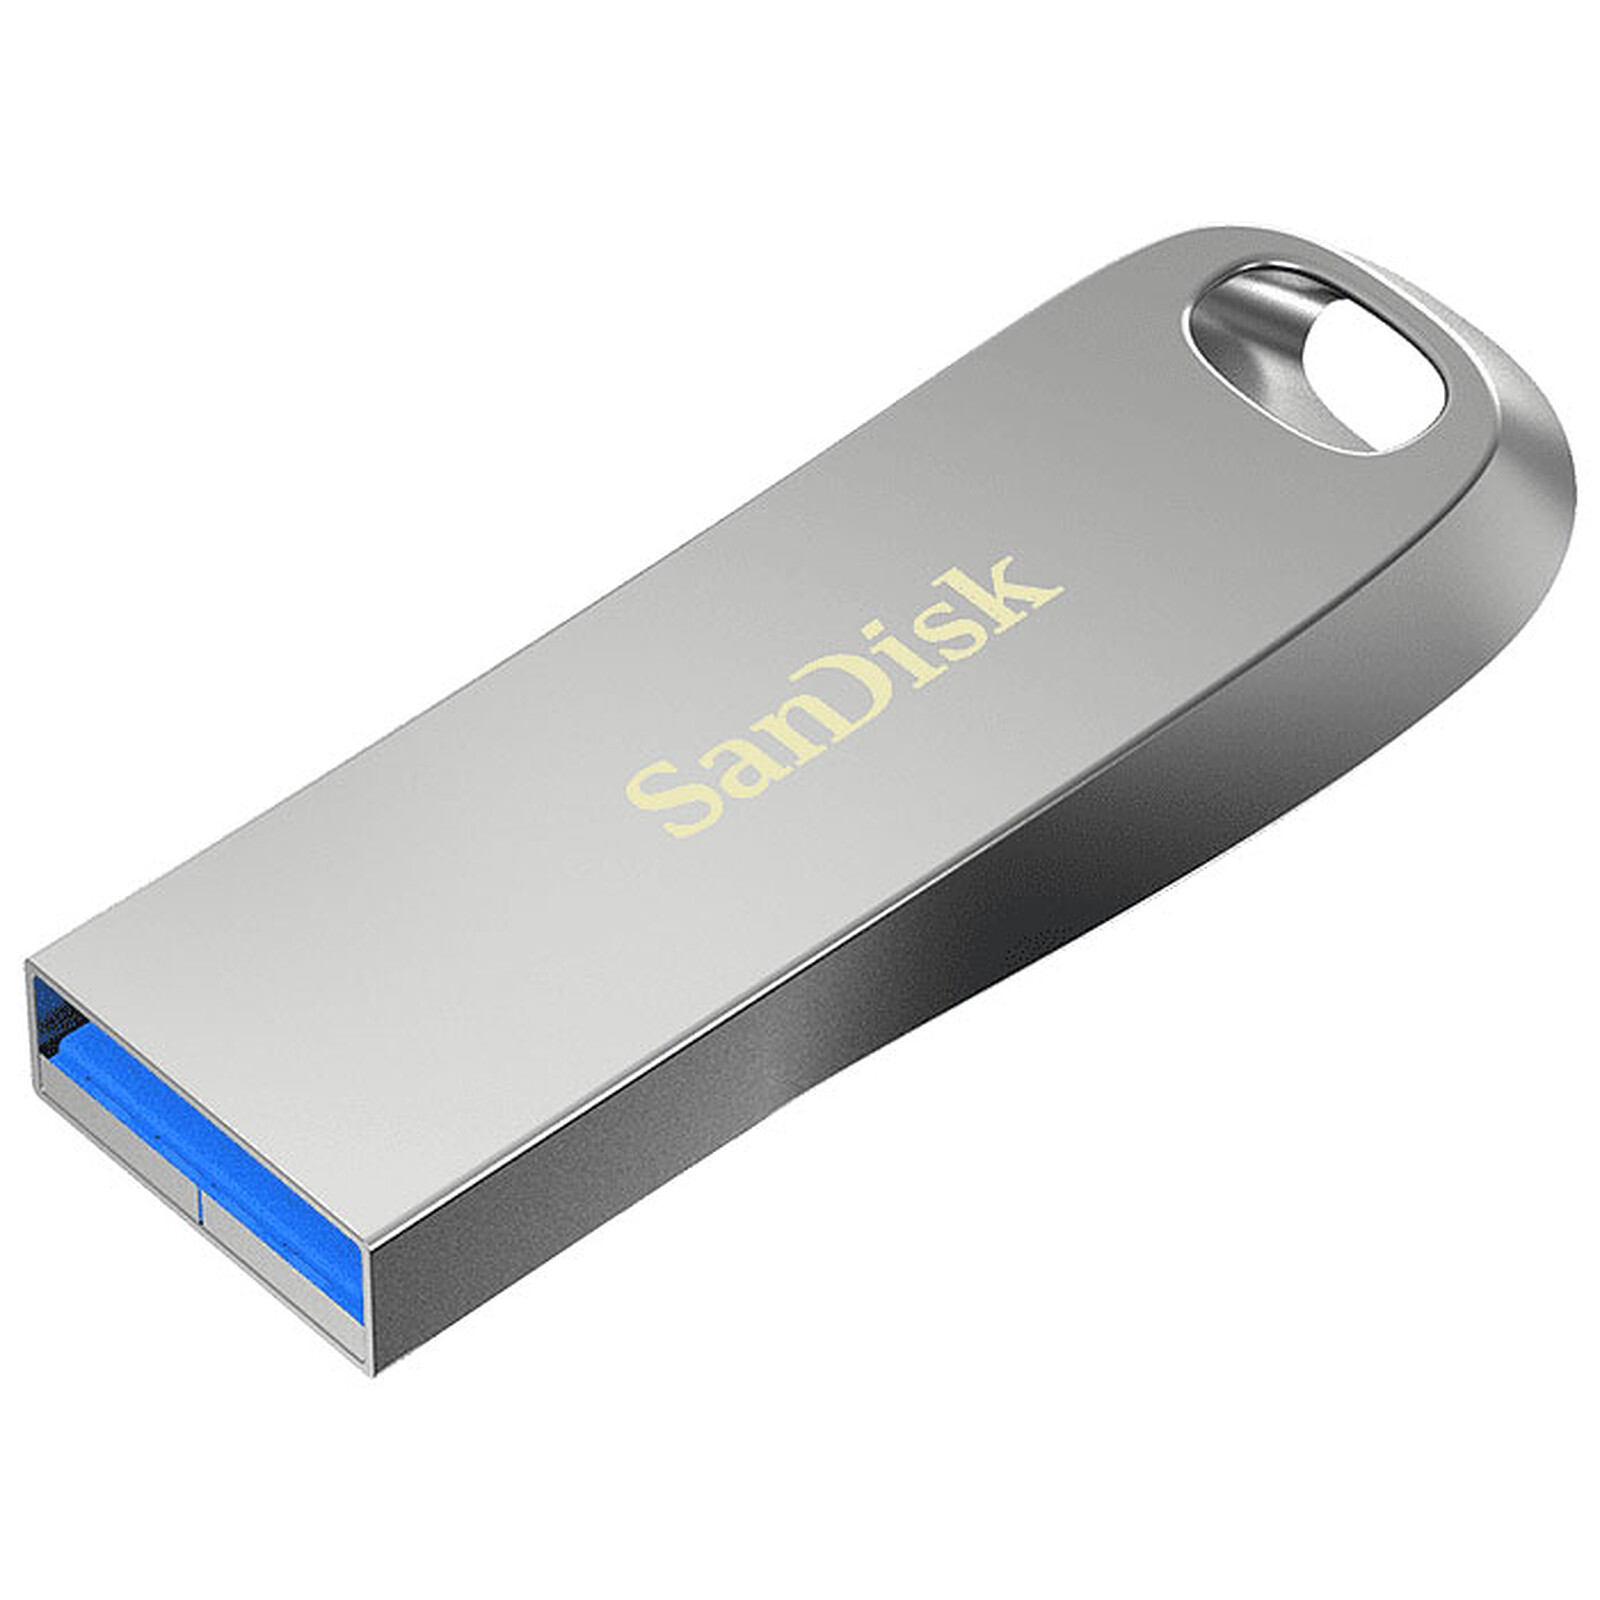 SanDisk Ultra Type-C 128 Go : meilleur prix et actualités - Les Numériques